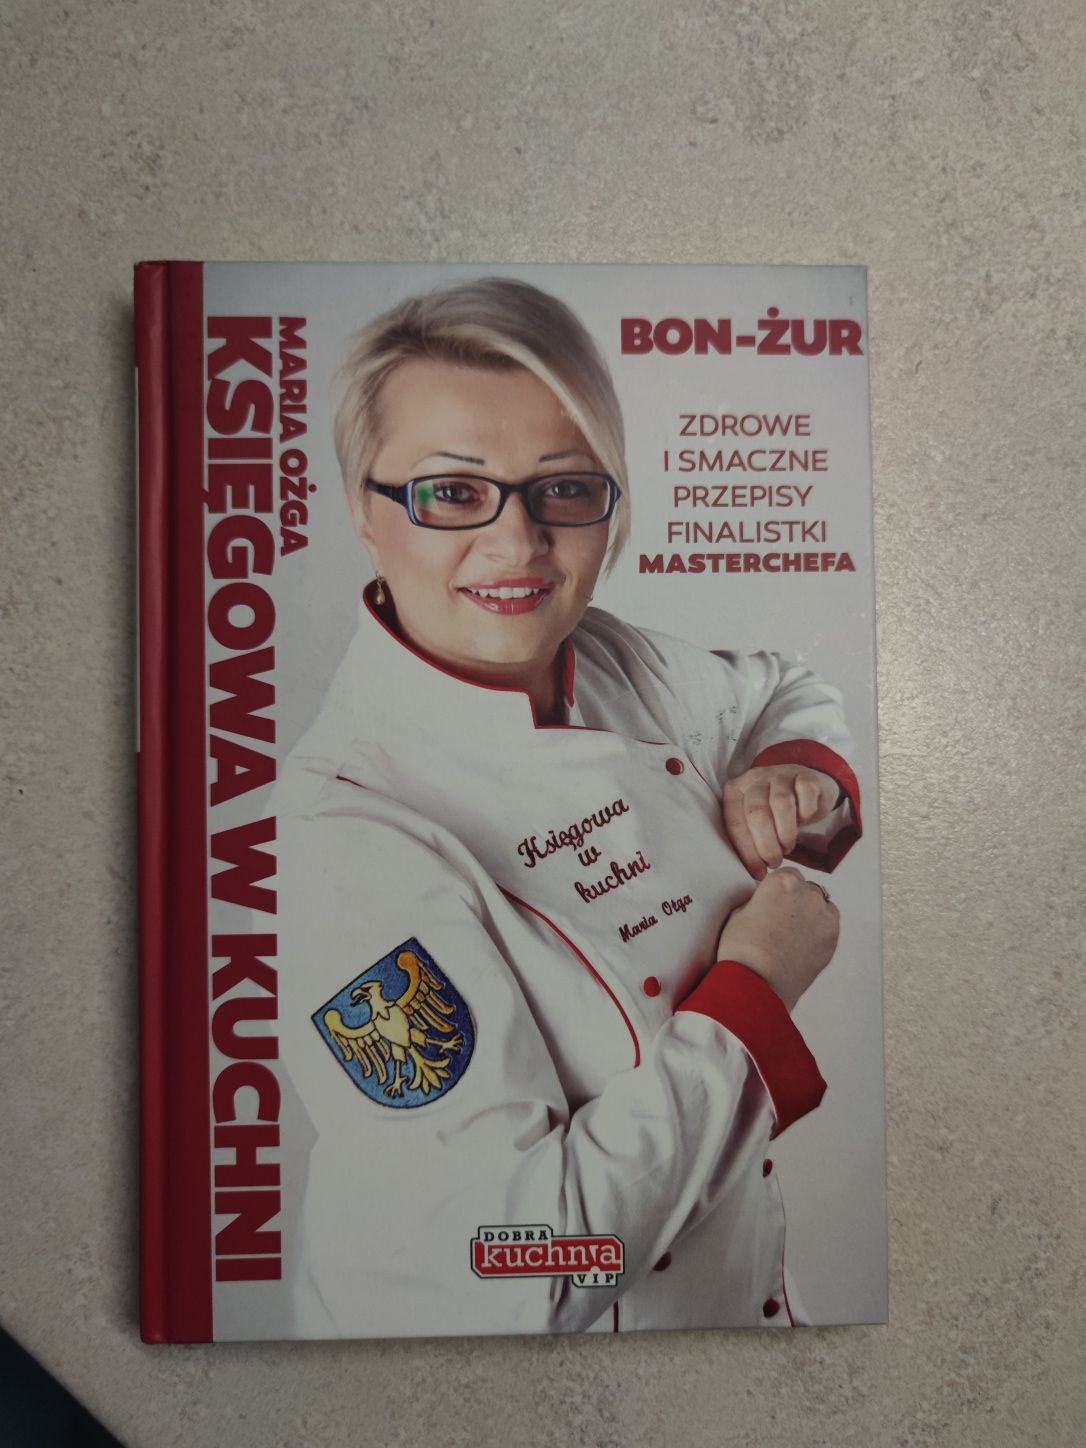 Nowa książka kucharska Księgowa w kuchni Bon-żur Maria Ożgw